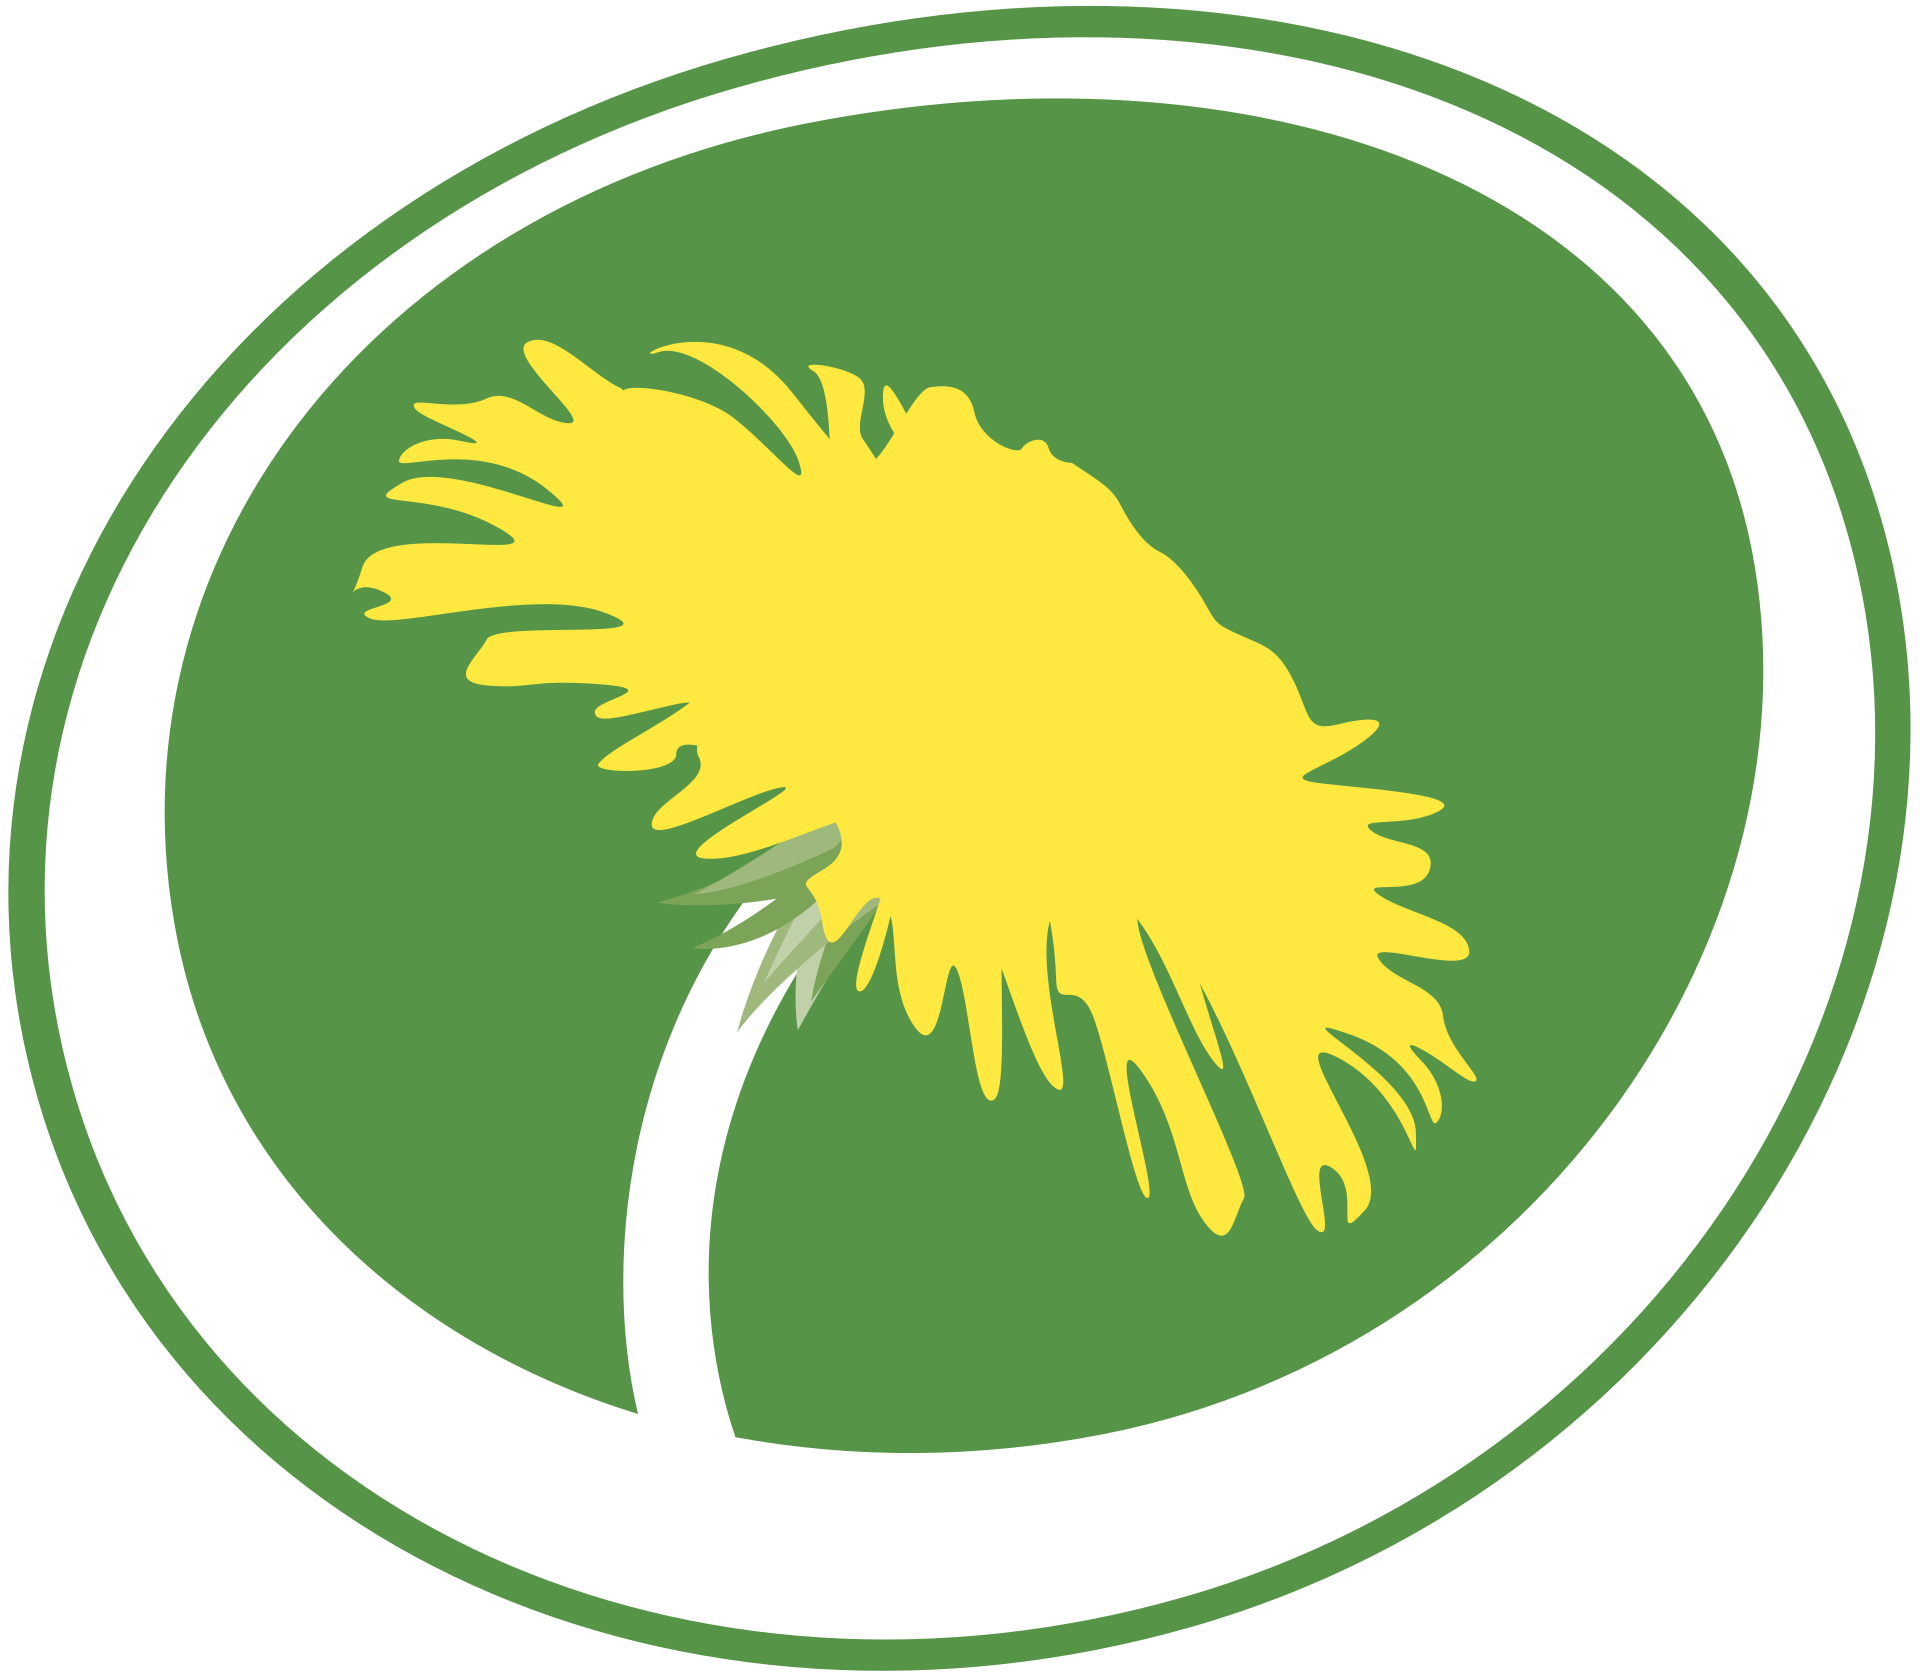 Miljöpartiet de Gröna - Wikipedia